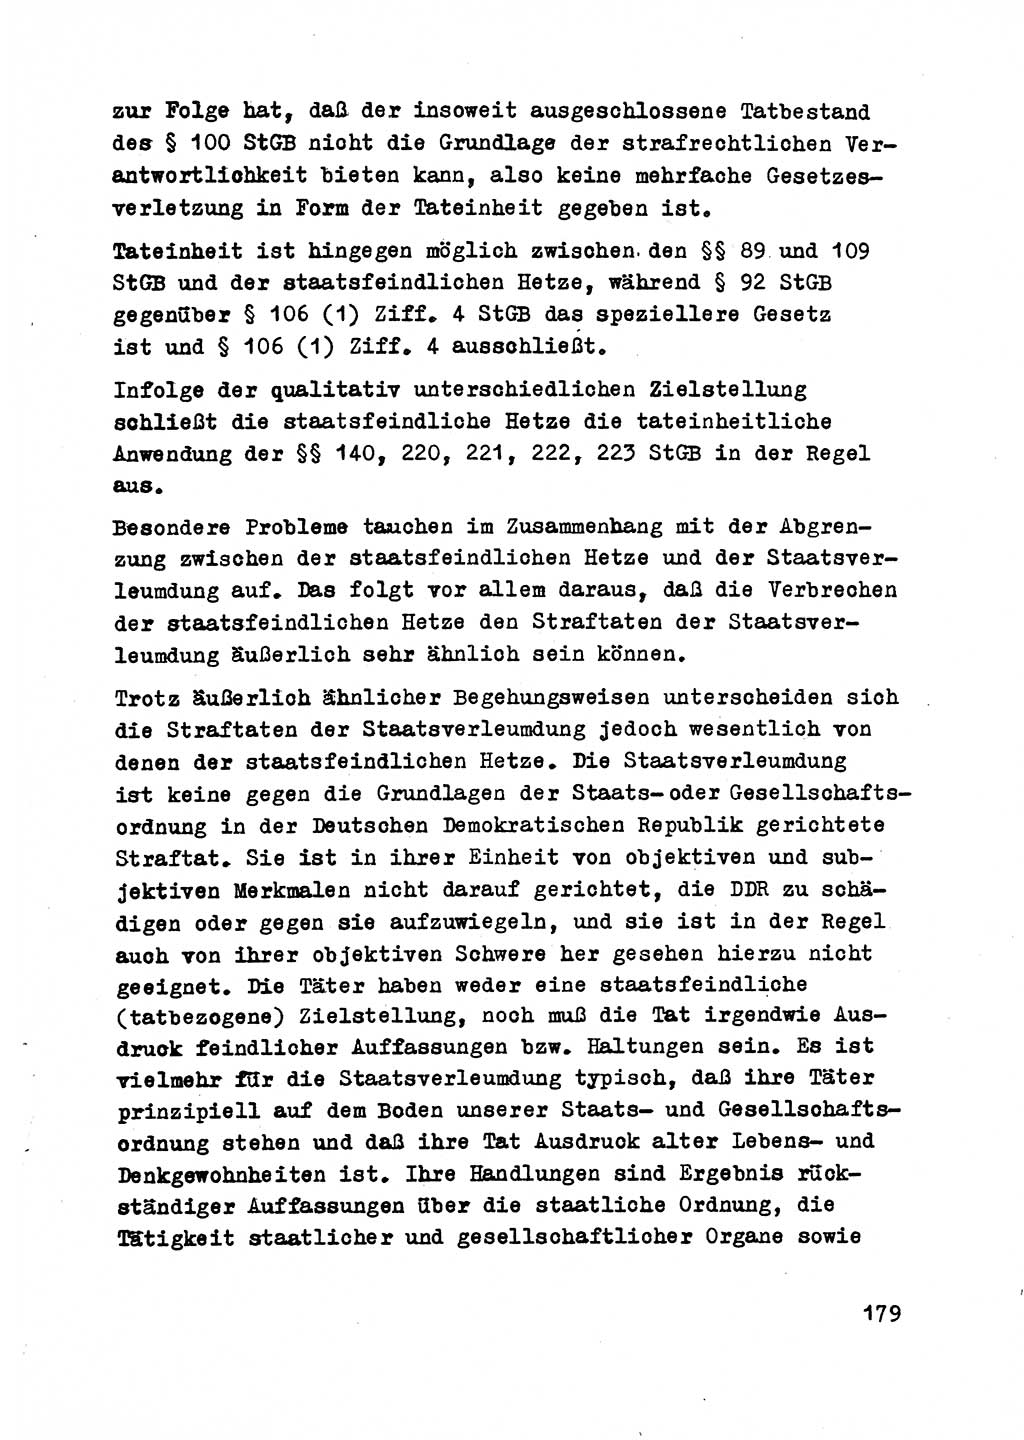 Strafrecht der DDR (Deutsche Demokratische Republik), Besonderer Teil, Lehrmaterial, Heft 2 1969, Seite 179 (Strafr. DDR BT Lehrmat. H. 2 1969, S. 179)